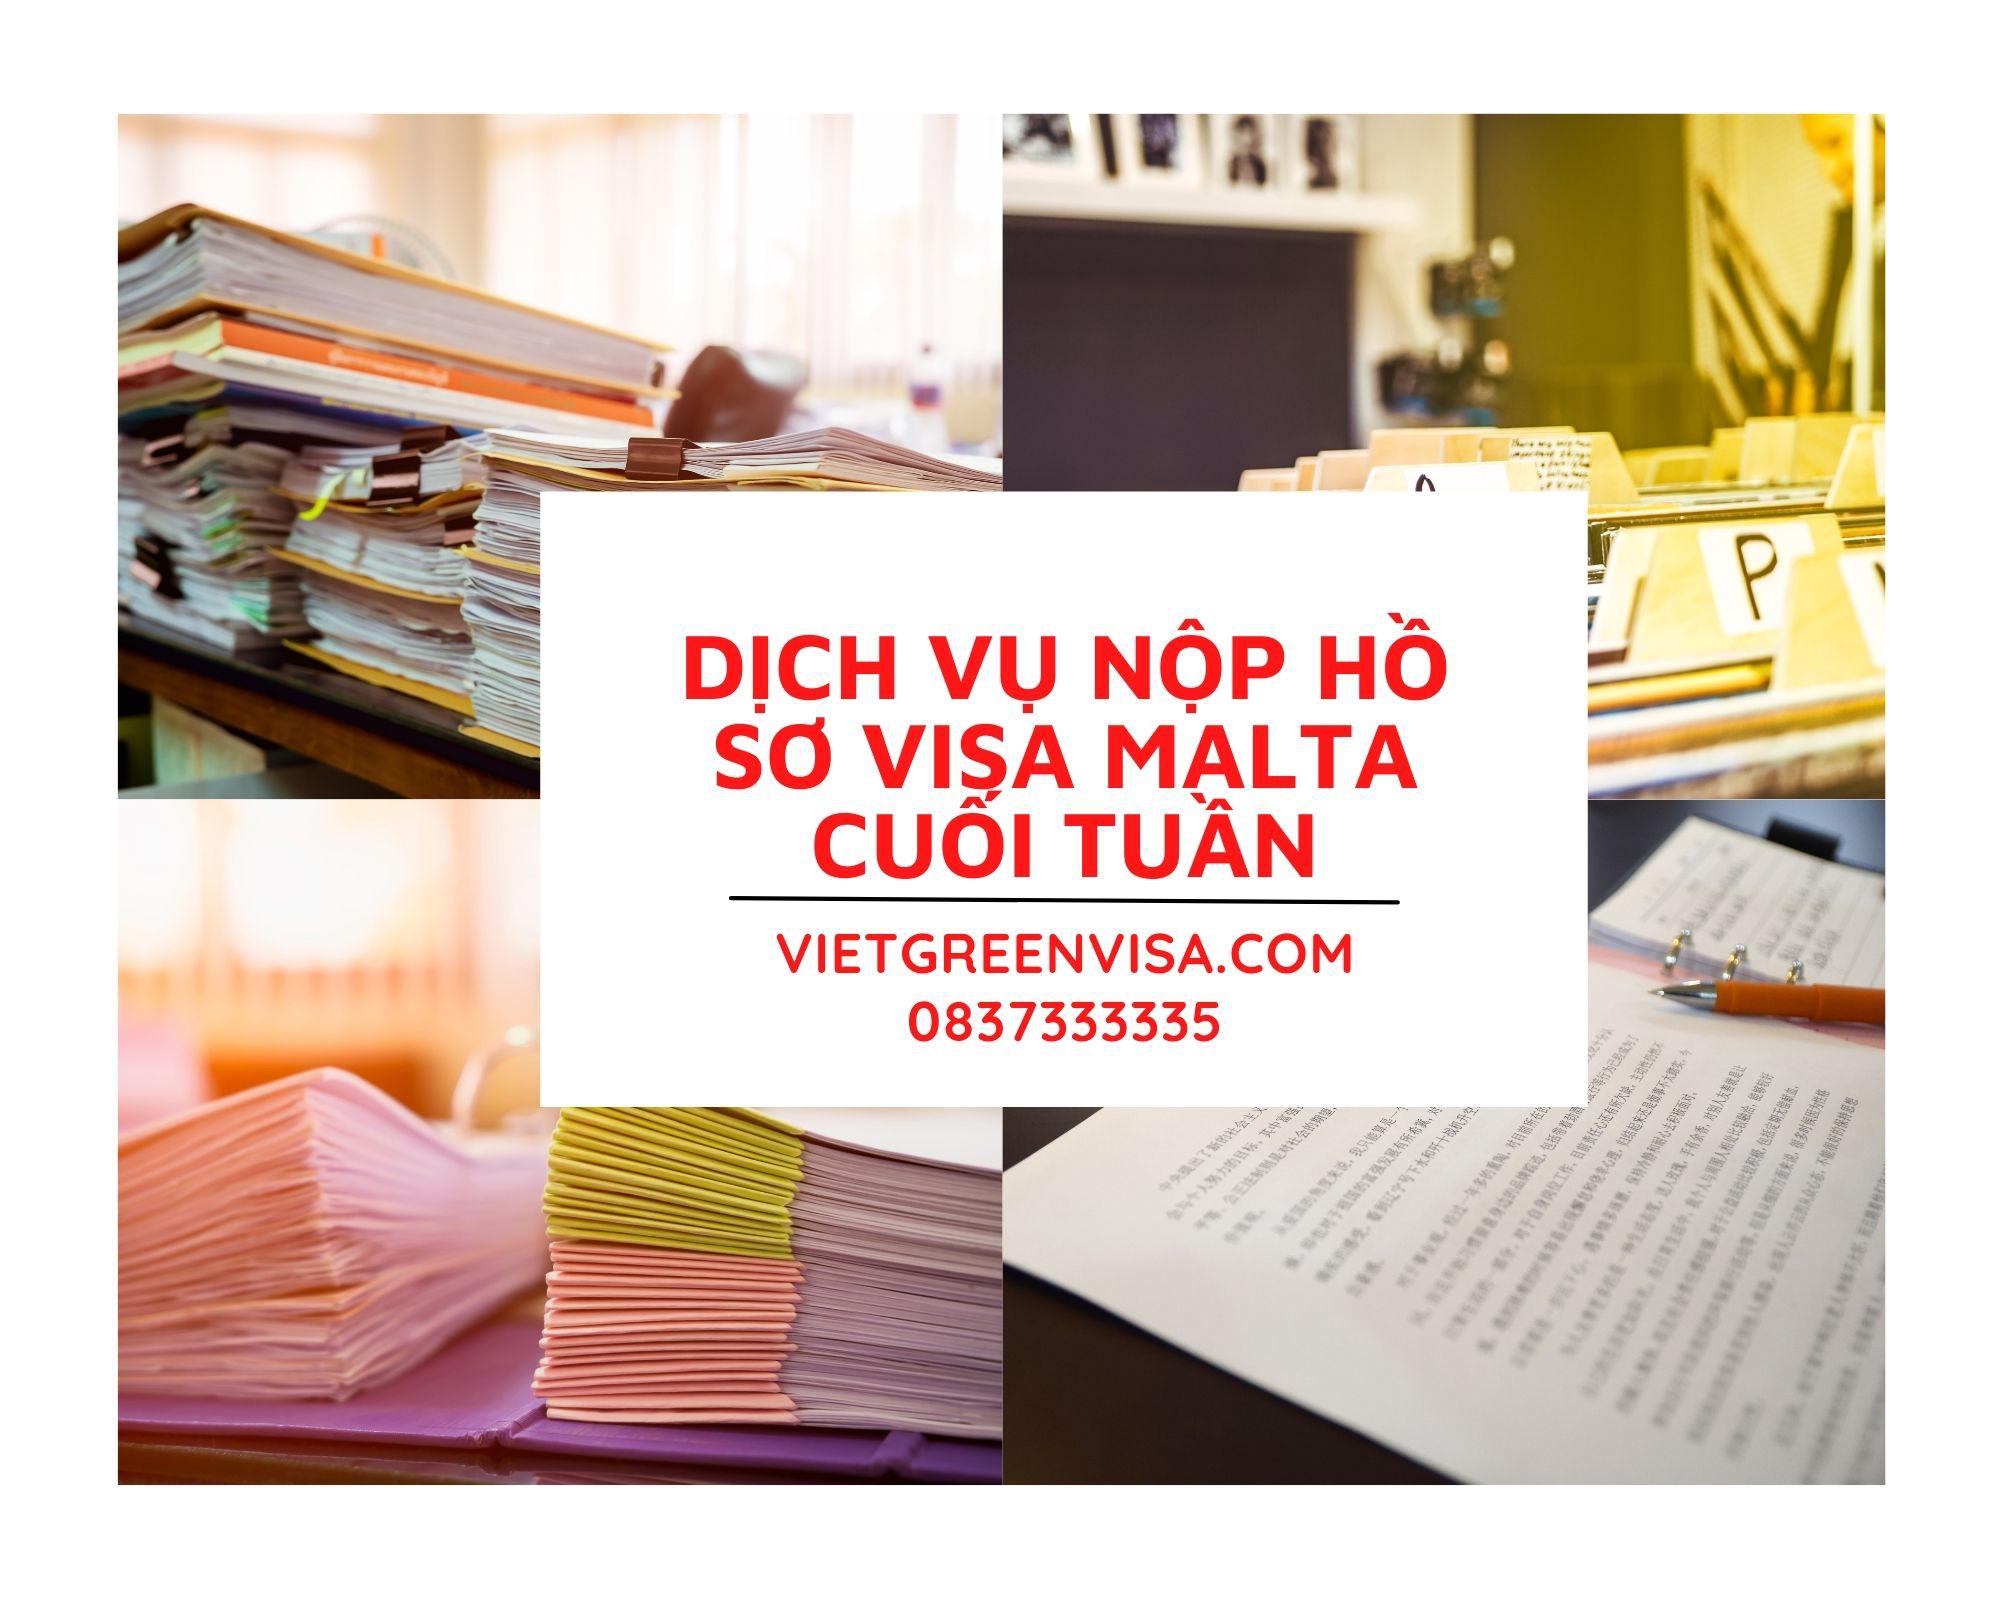 Hỗ trợ nộp hồ sơ xin visa Malta Thứ 7 cuối tuần